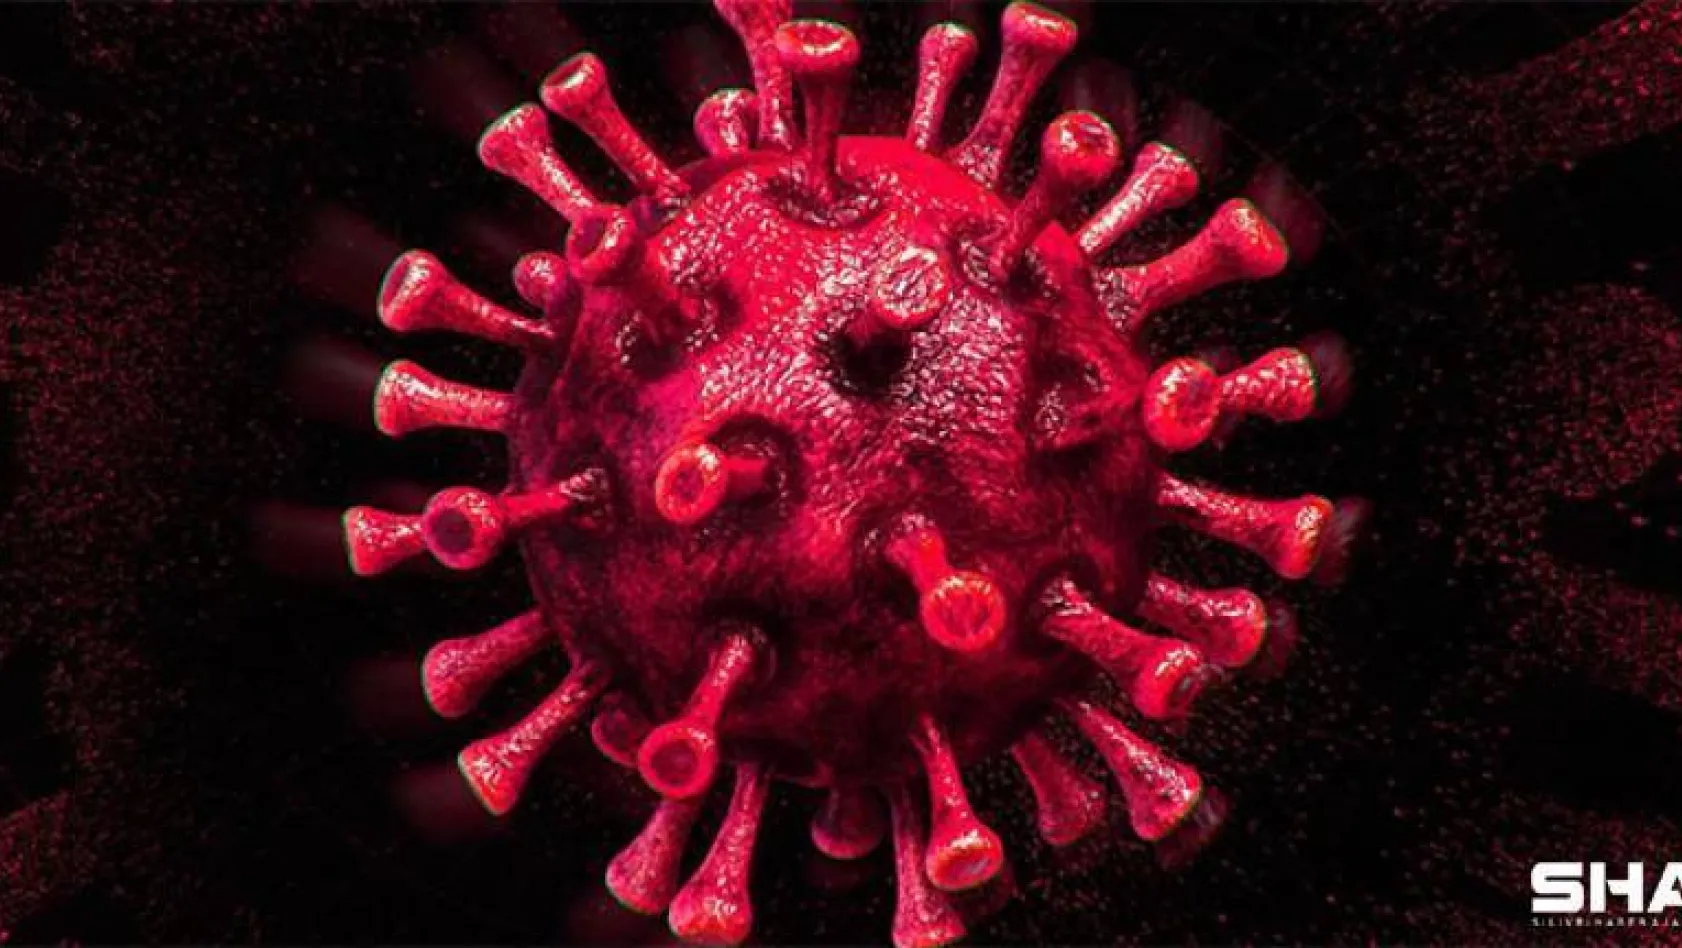 Türkiye'de son 24 saatte 8.104 koronavirüs vakası tespit edildi